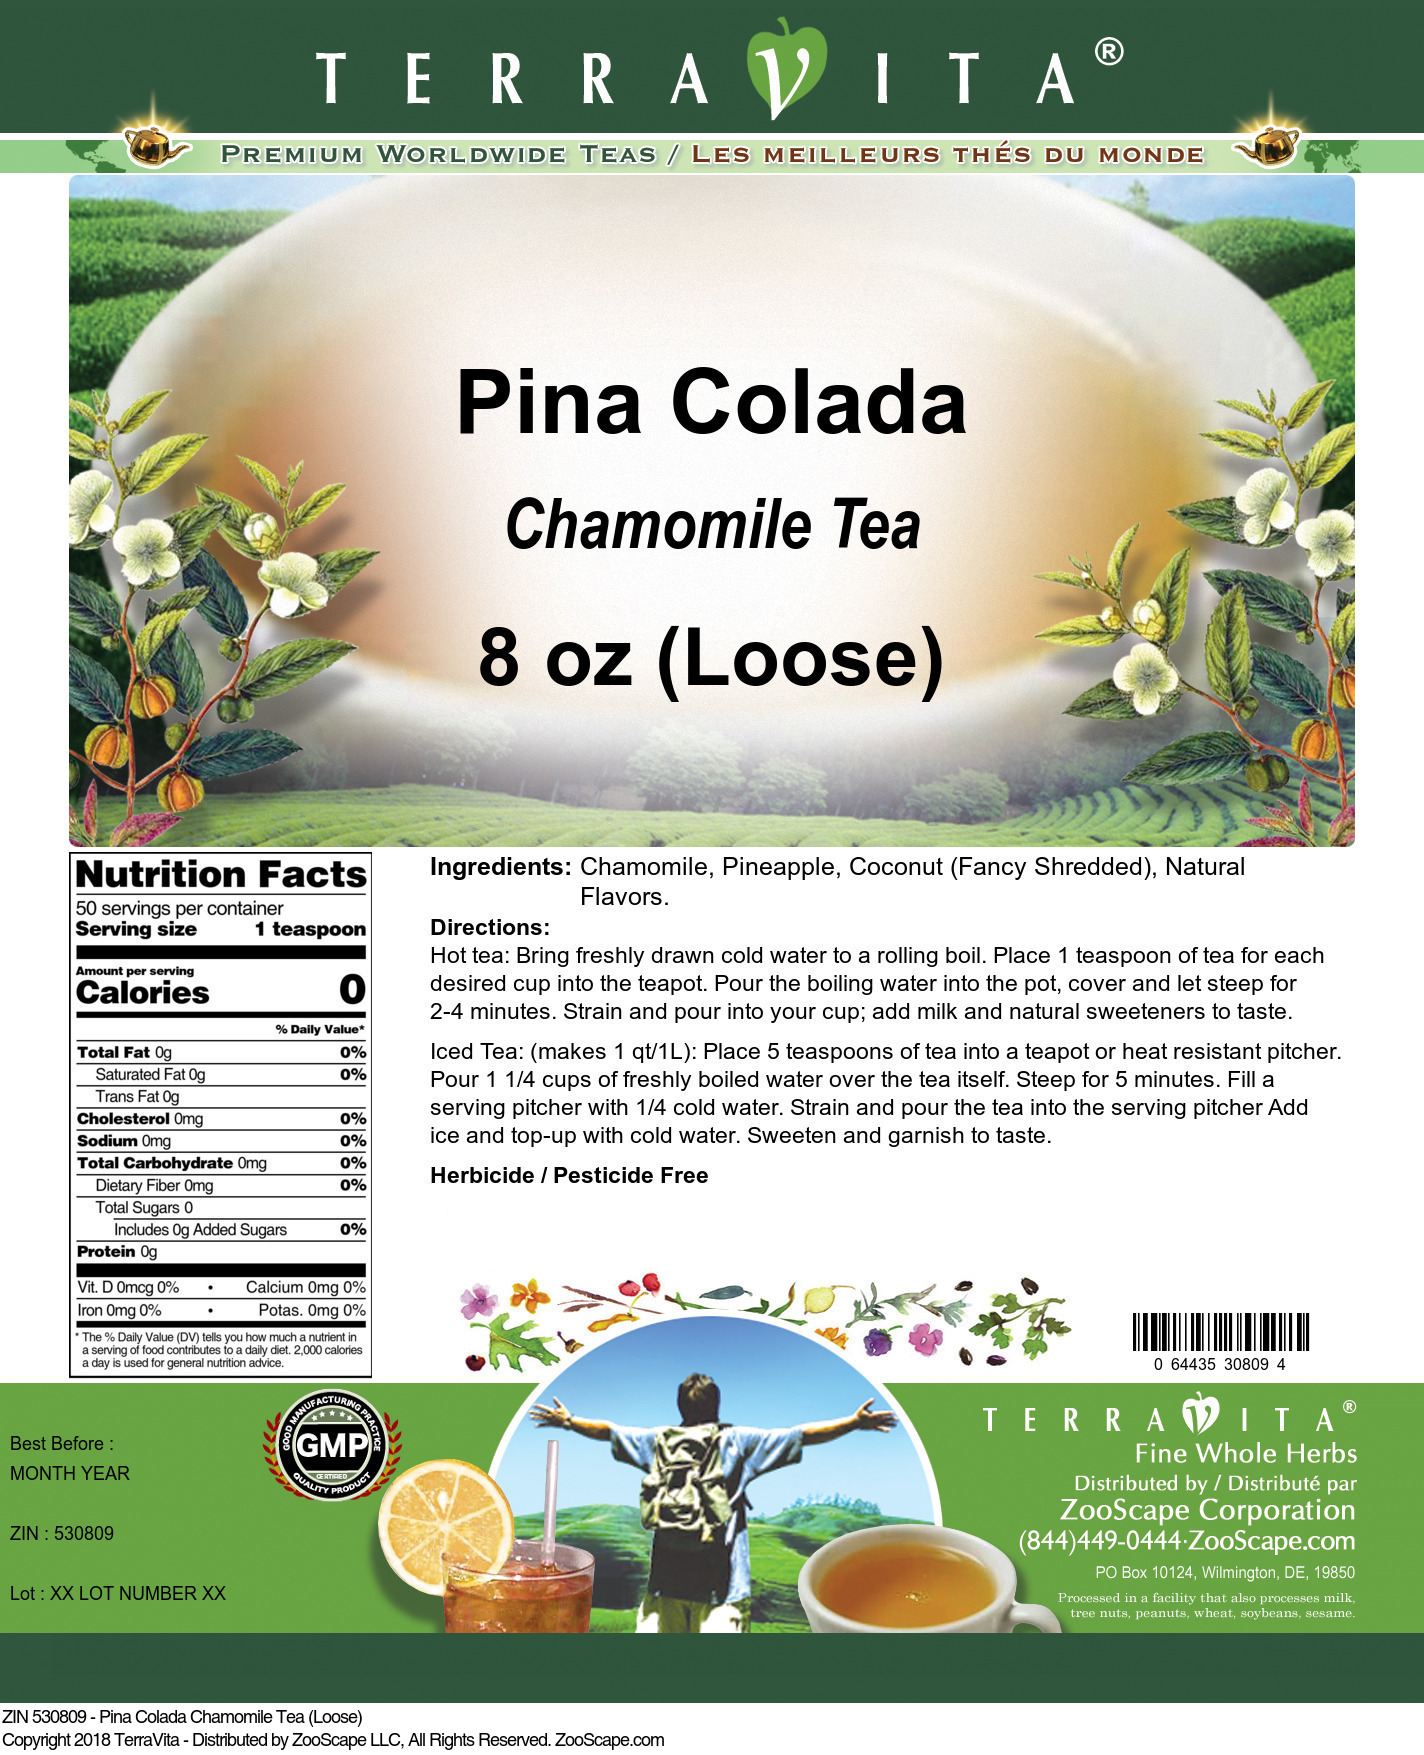 Pina Colada Chamomile Tea (Loose) - Label